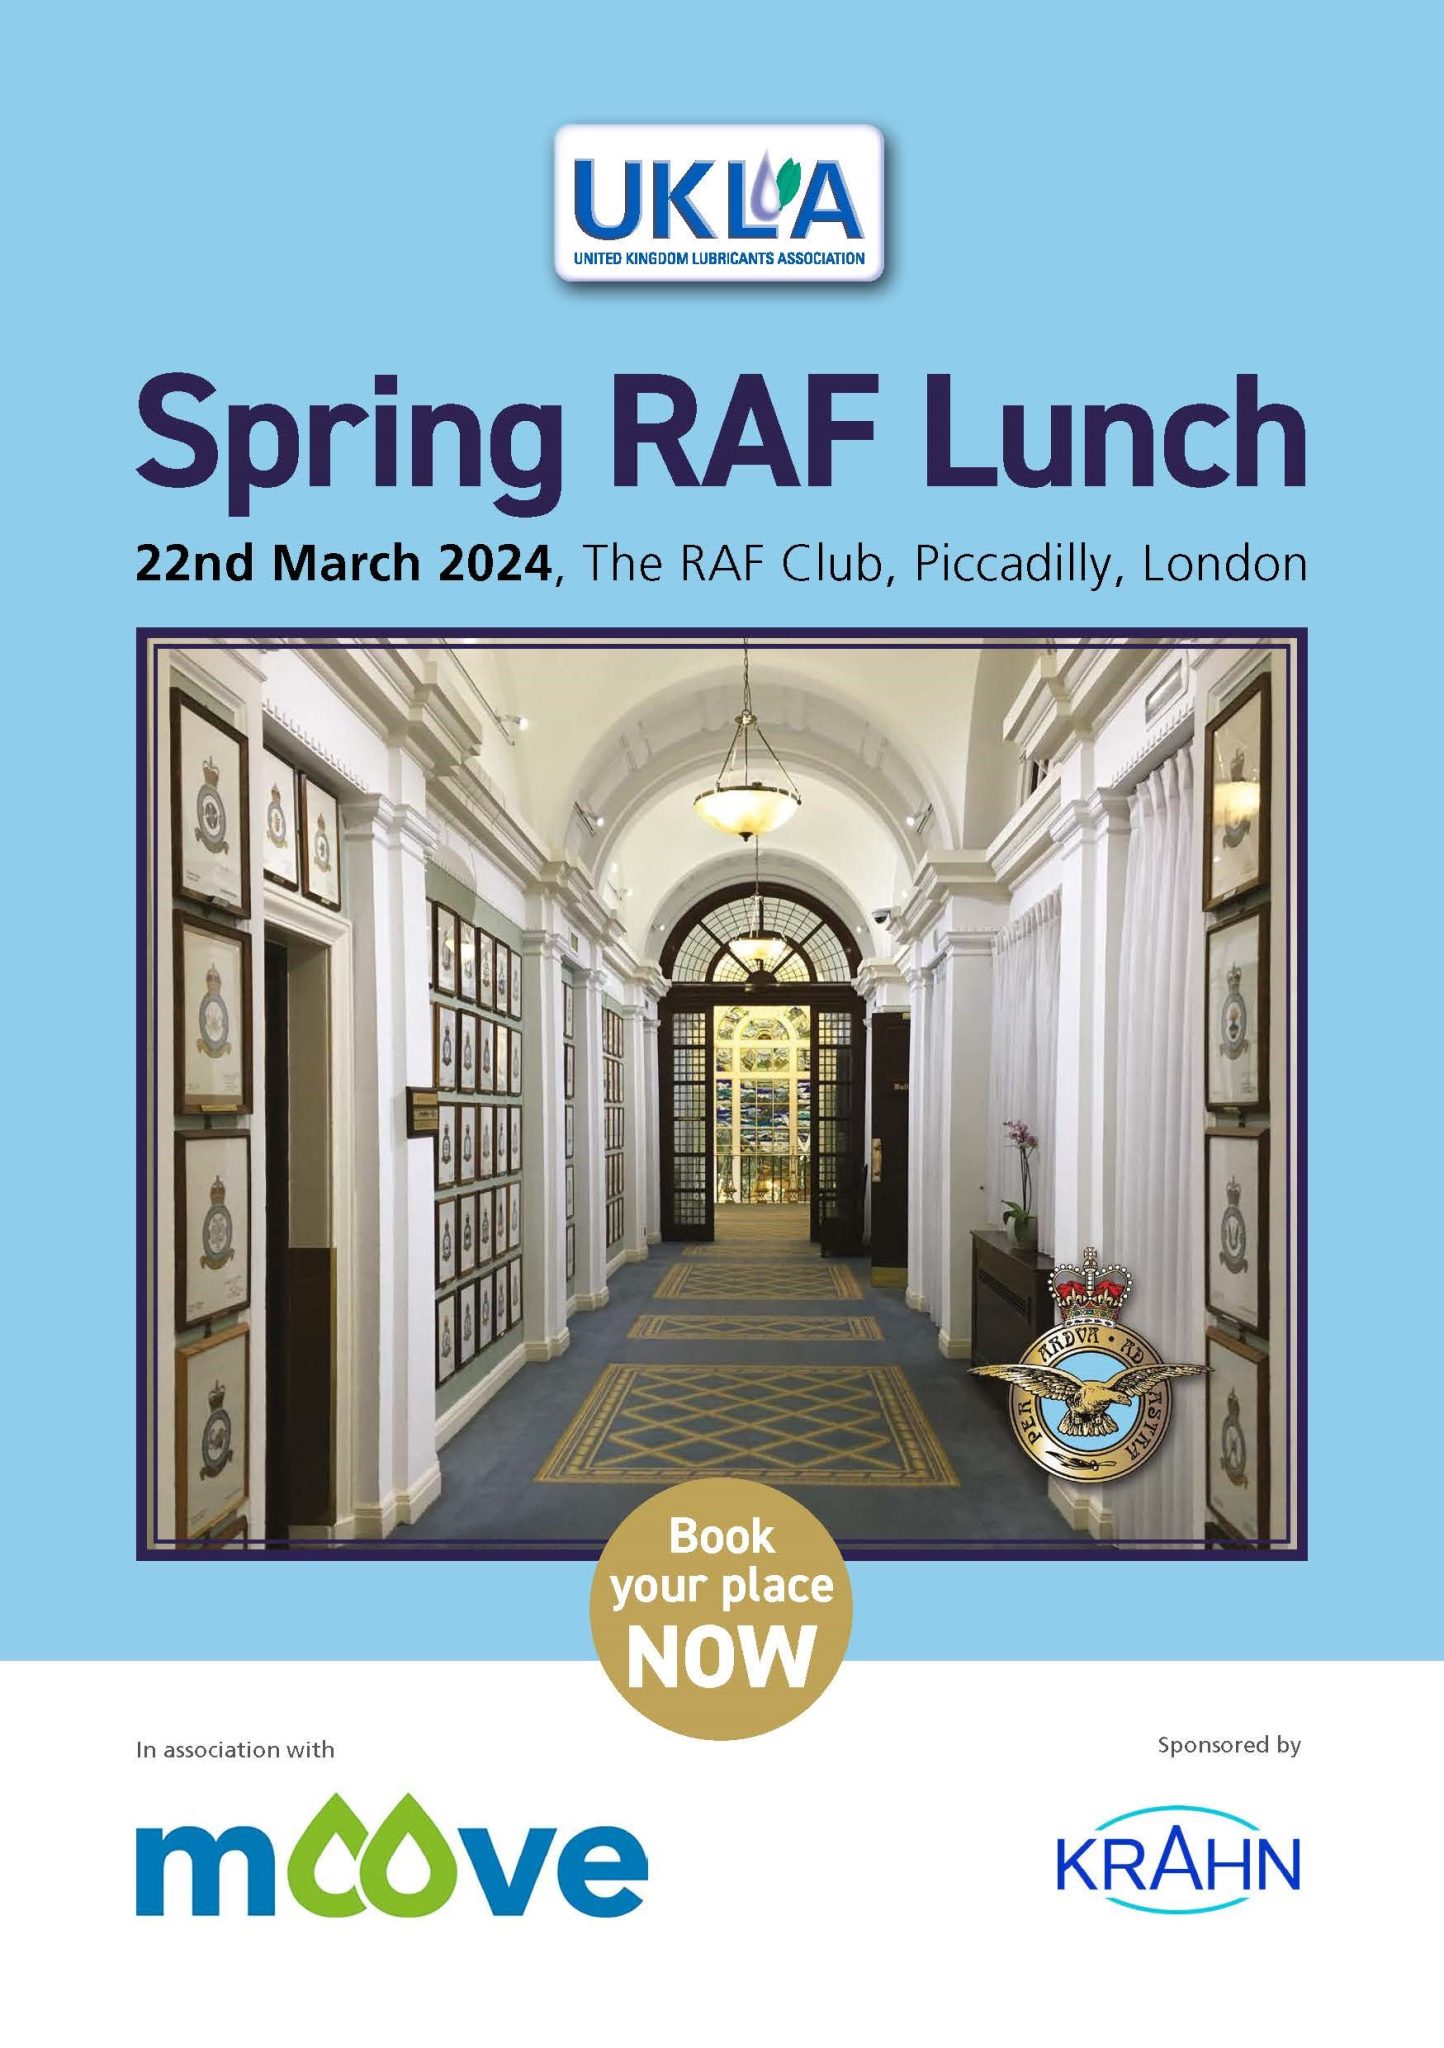 KRAHN UK sponsors UKLA’s Spring RAF Lunch 2024